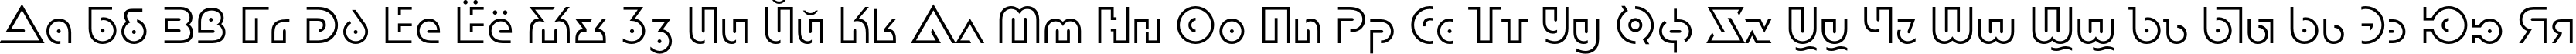 Пример написания русского алфавита шрифтом DublonLightC